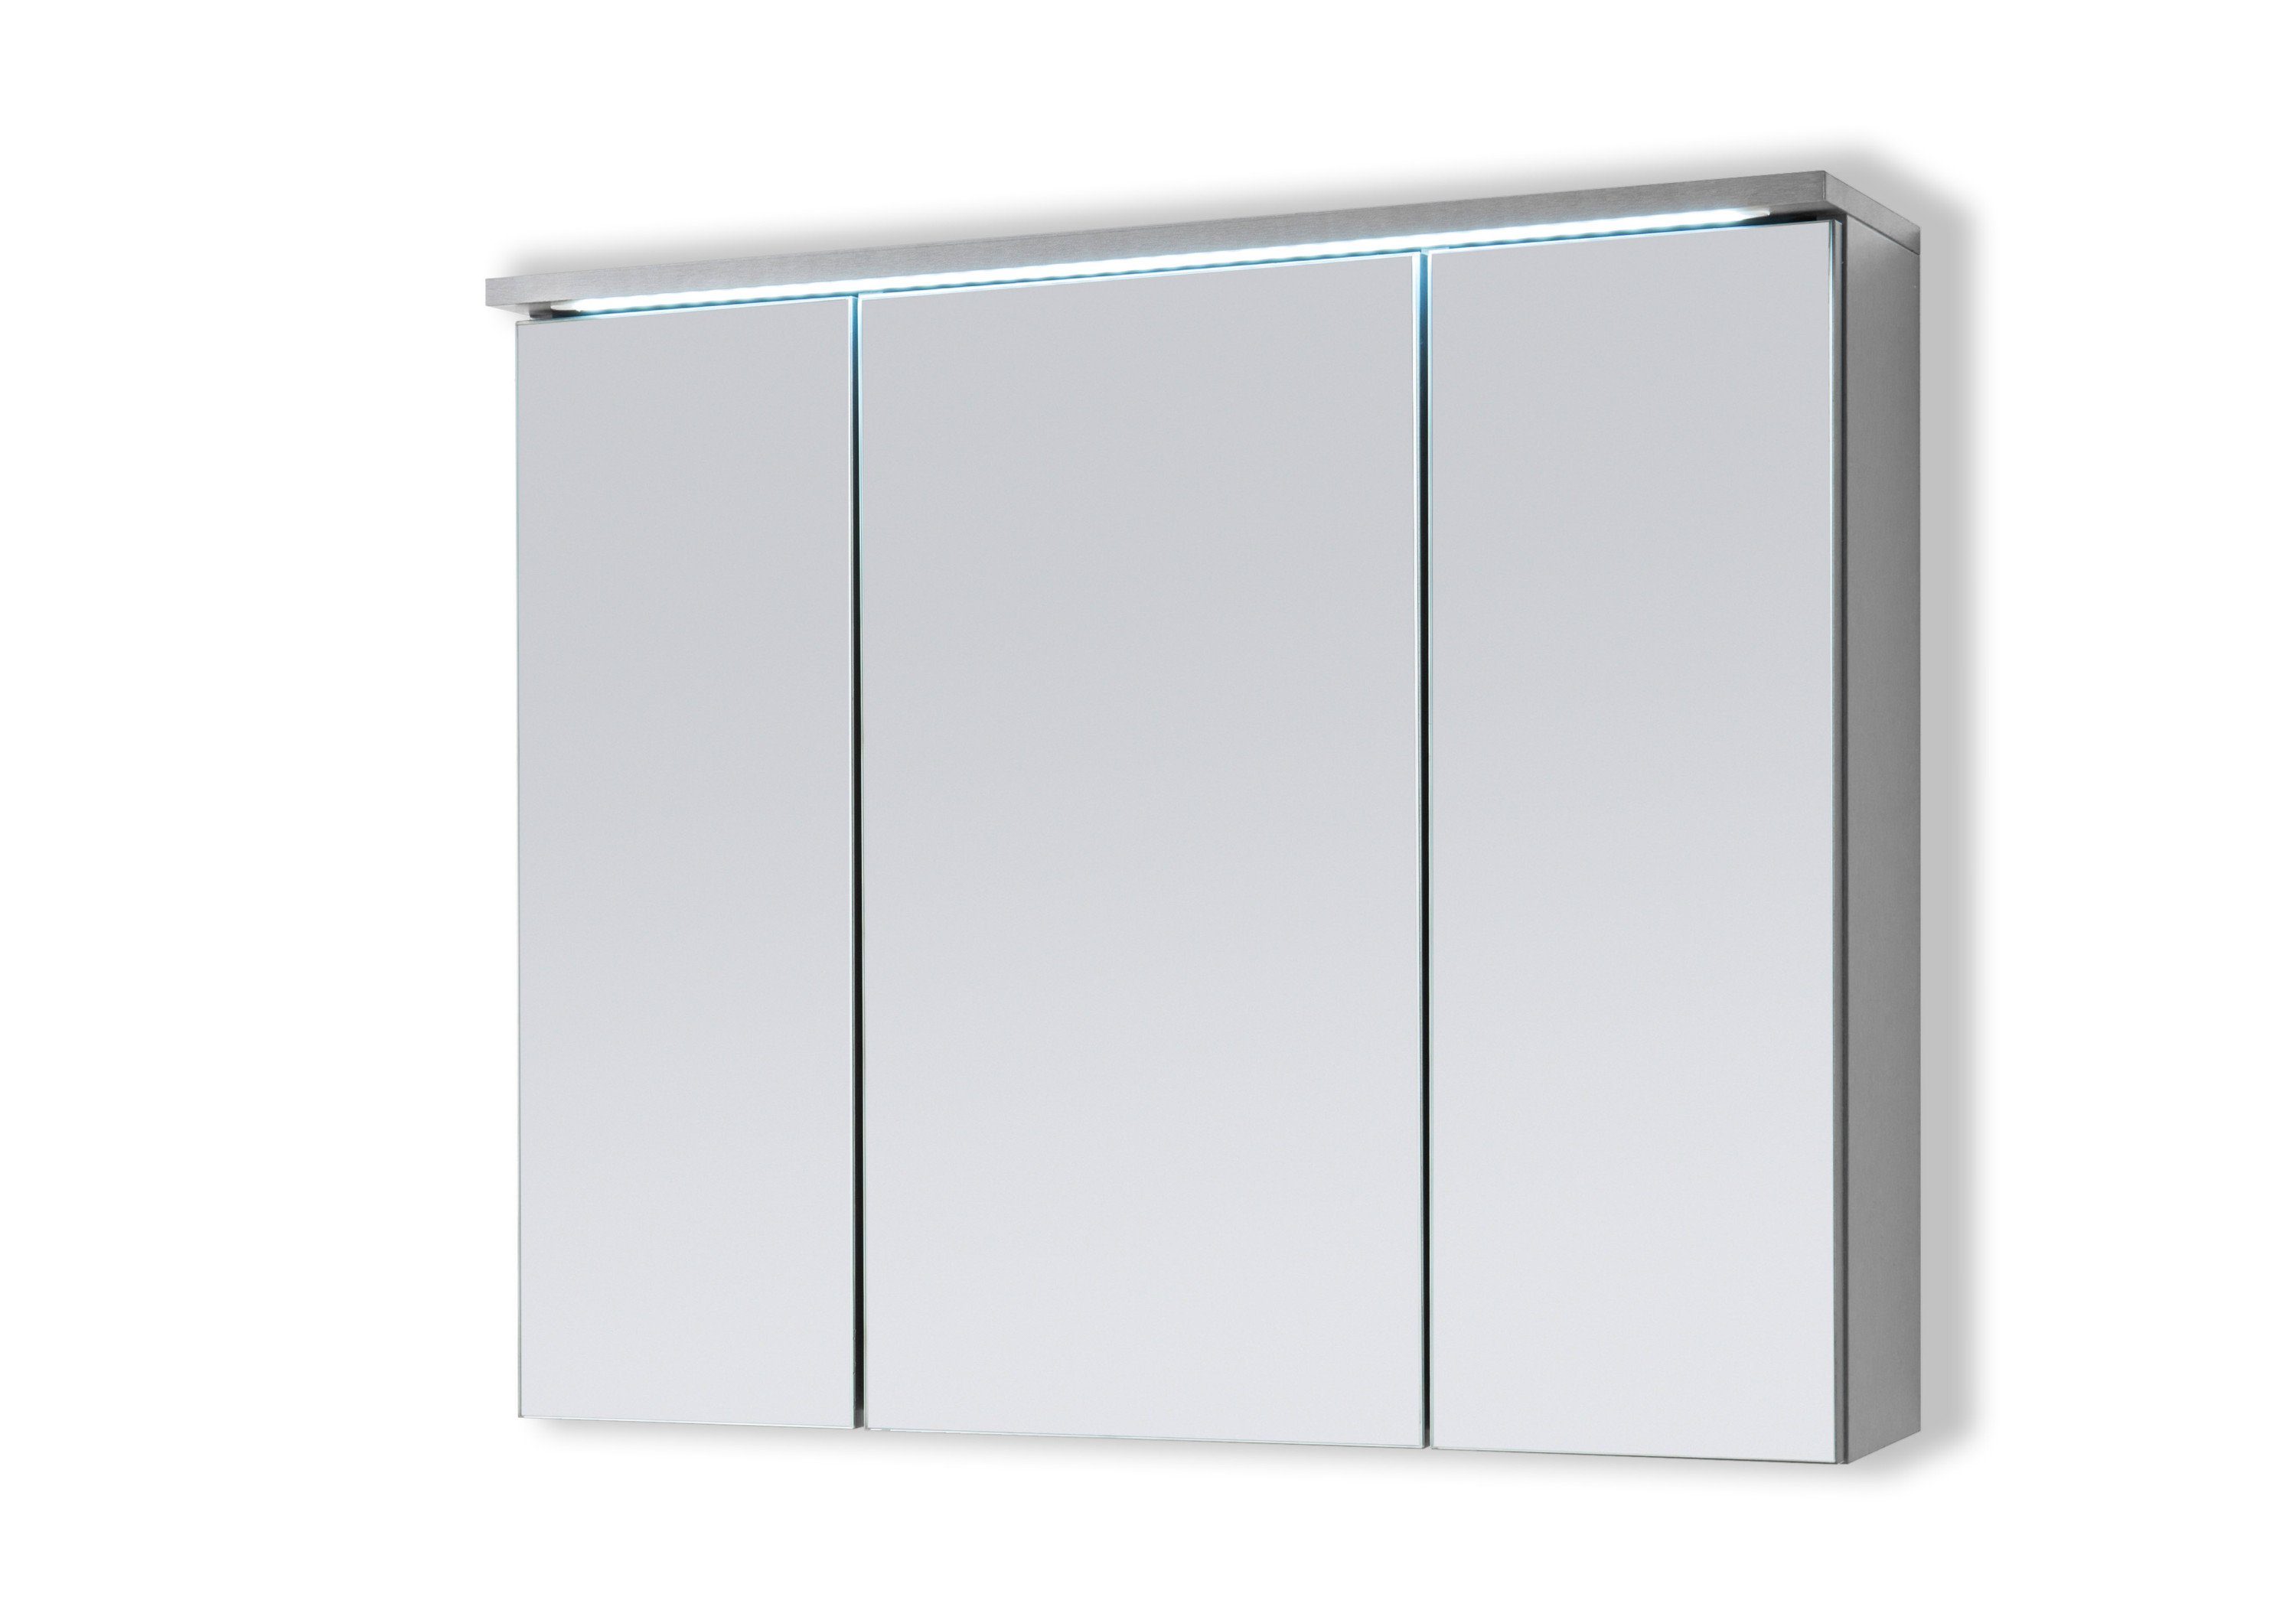 Aileenstore Spiegelschrank DUO Breite 80 Schalter-/Steckdosenbox, LED-Beleuchtung cm